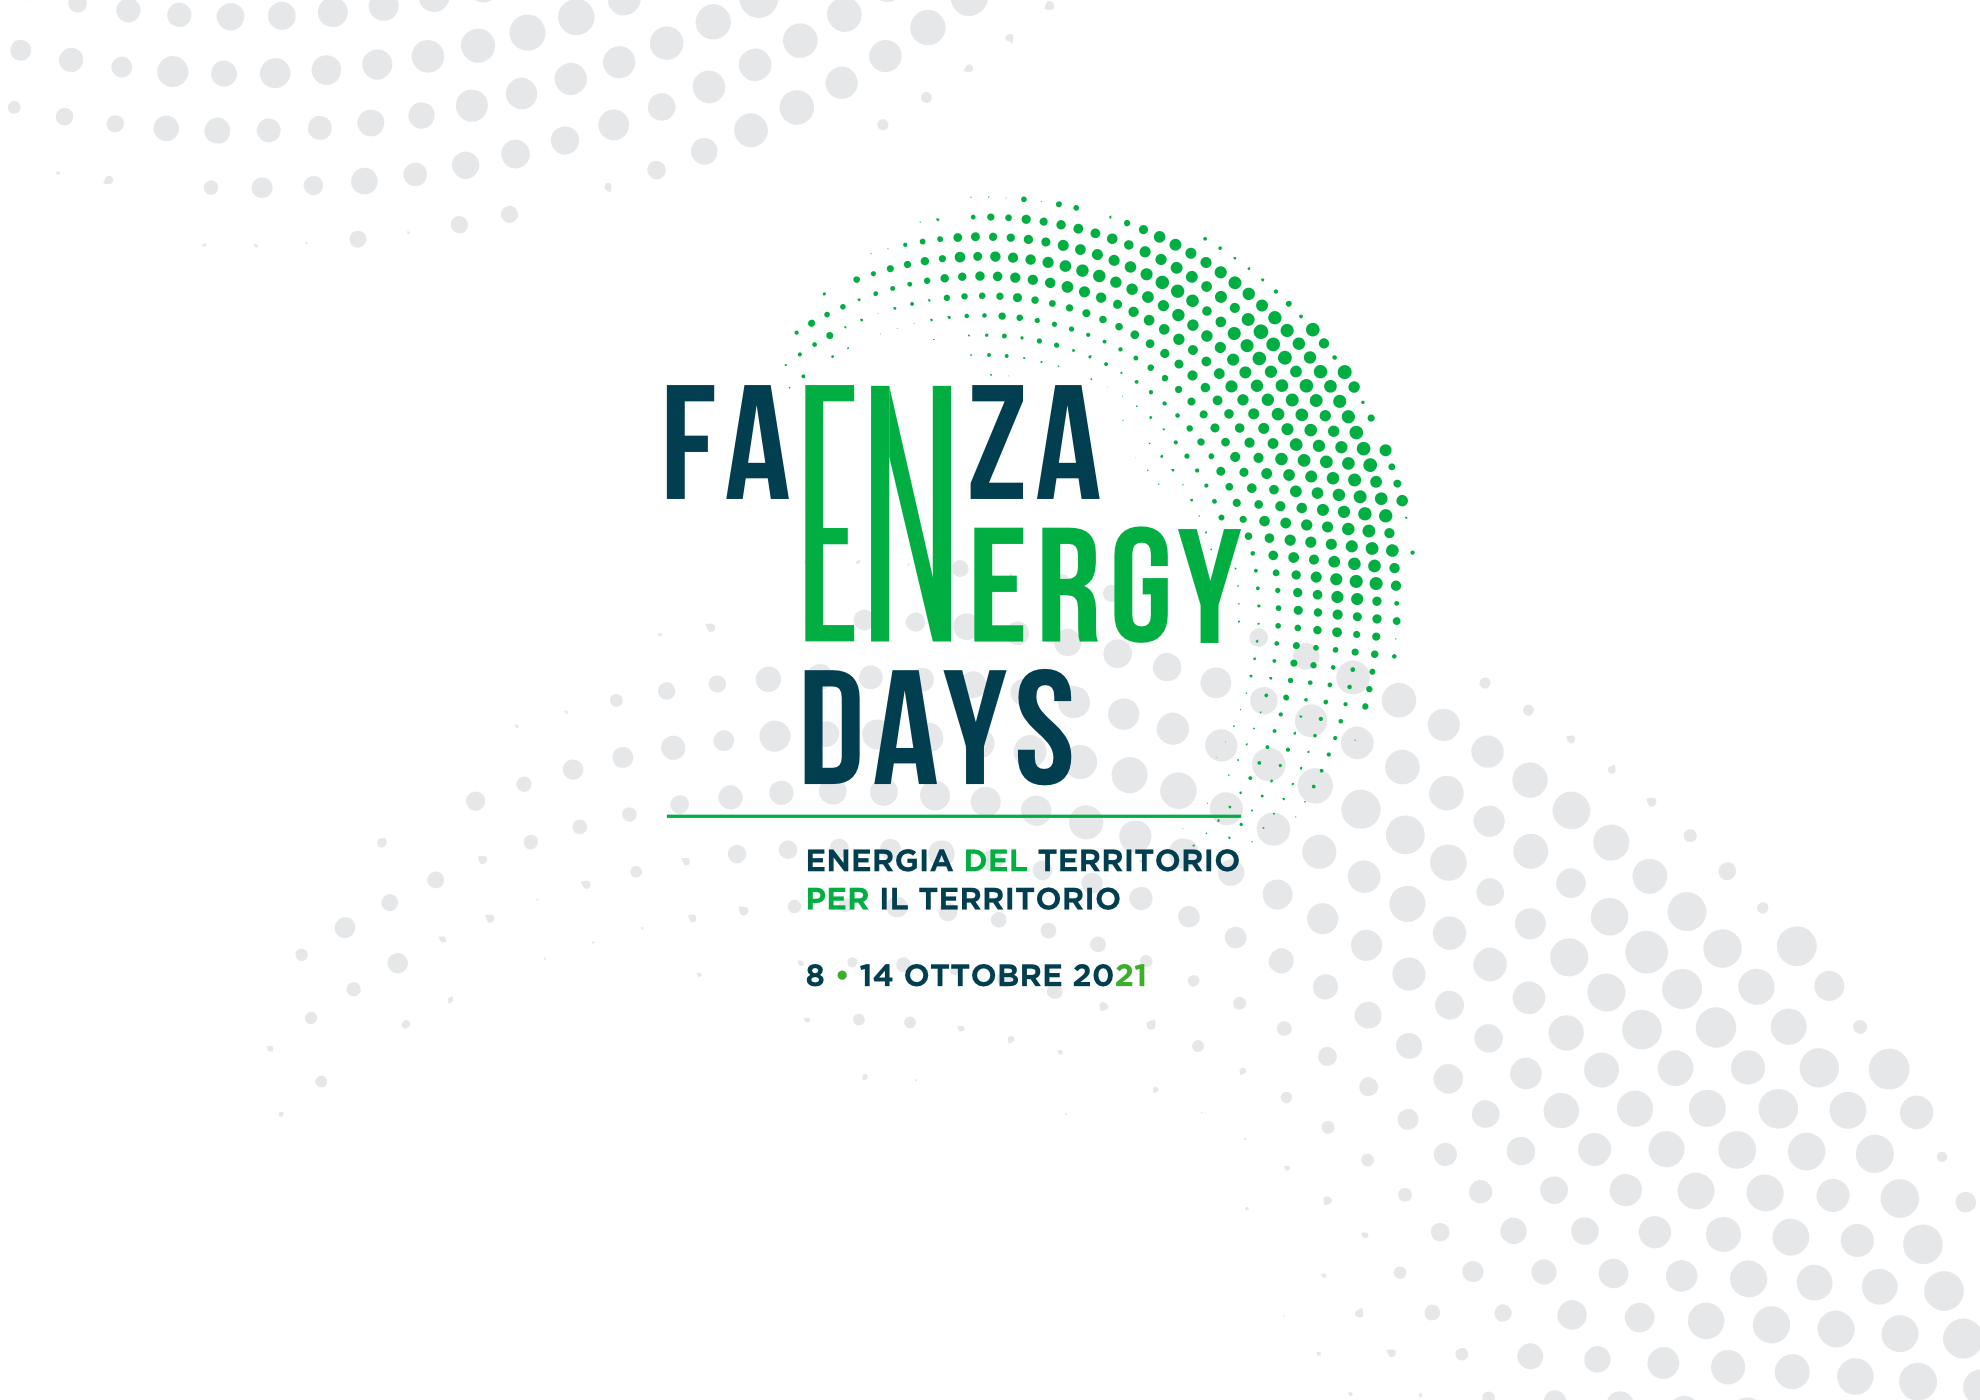 manifesto faenza energy 8-14 ottobre 2021